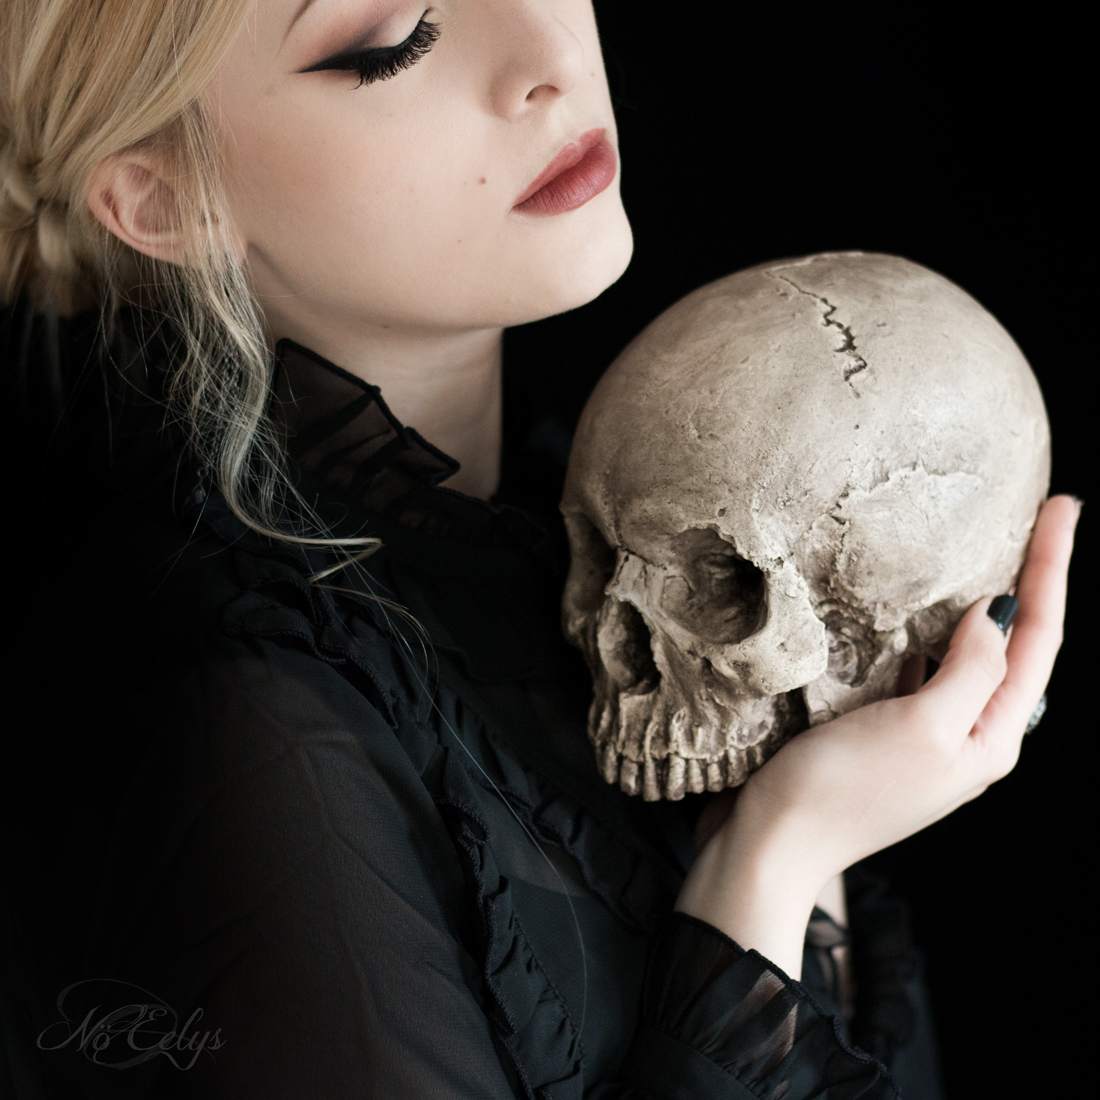 Déco gothique et victorienne : réplique de crâne humain fait main par Vicious Noodles, photo par Nö Eelys du blog Le Boudoir de Nö